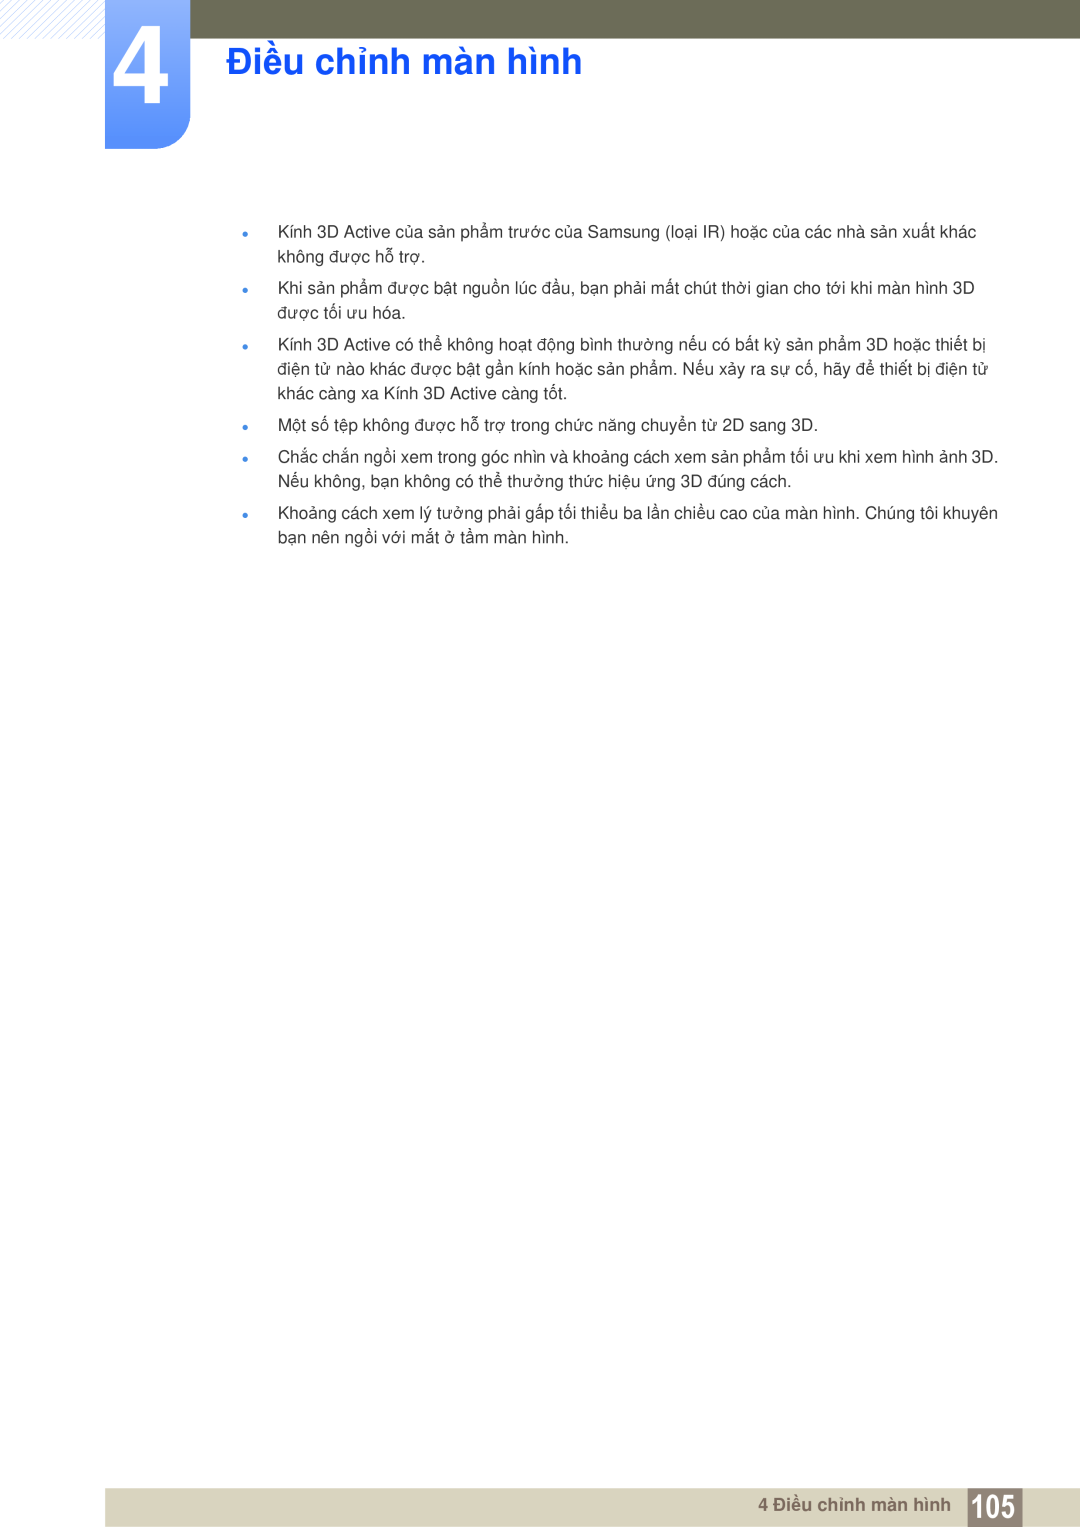 Samsung LH46MEPLGC/XY manual 4 Điều chỉnh màn hình, Một số tệp không được hỗ trợ trong chức năng chuyển từ 2D sang 3D 